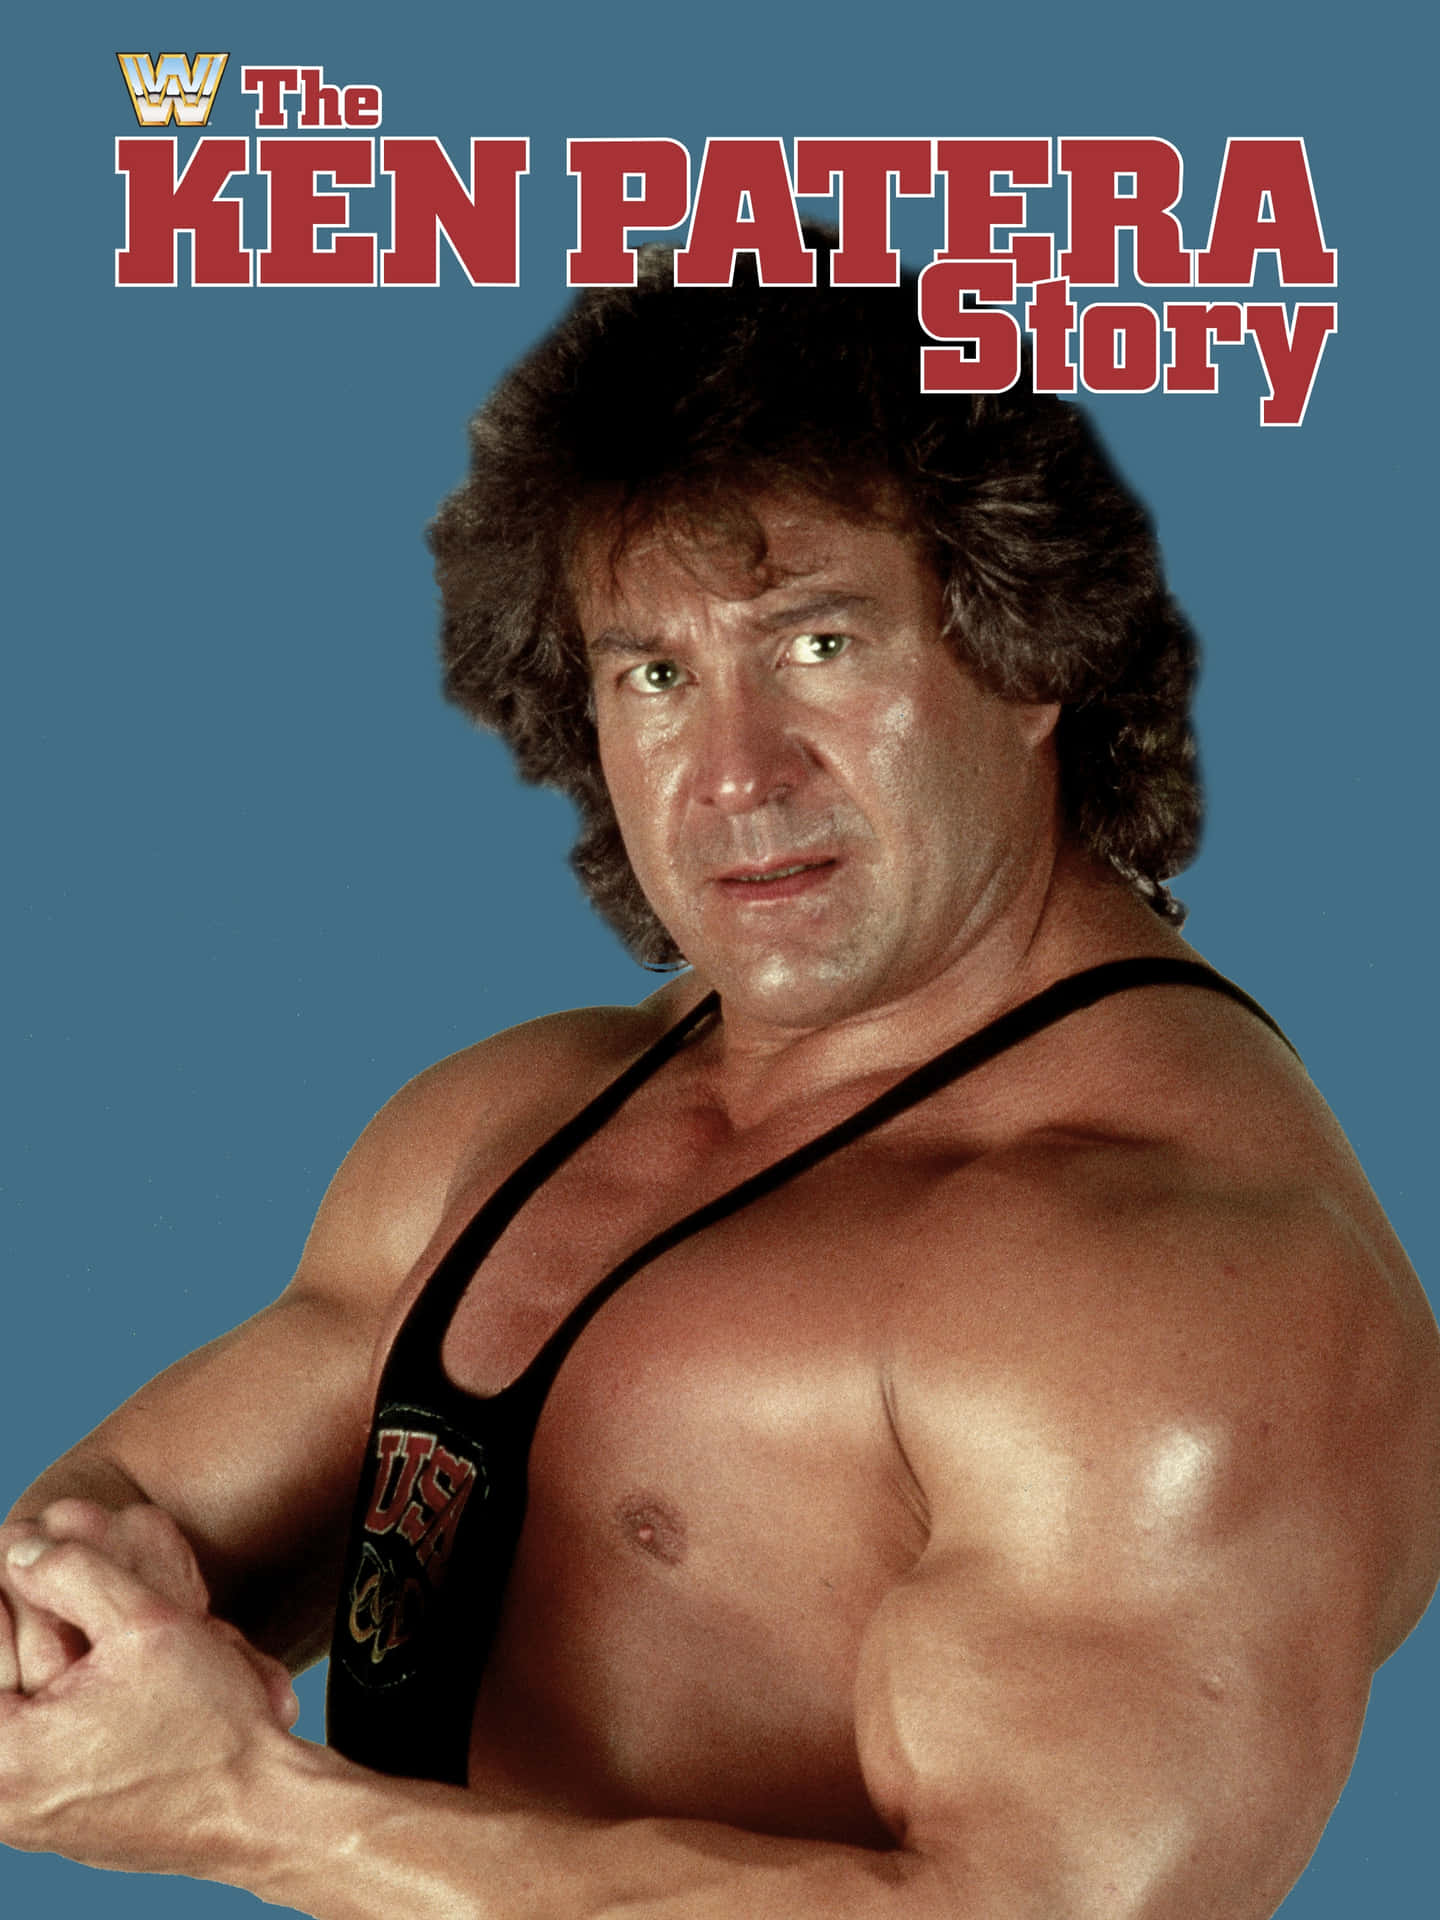 Caption: Legendary Wrestler Ken Patera - Story Poster Wallpaper